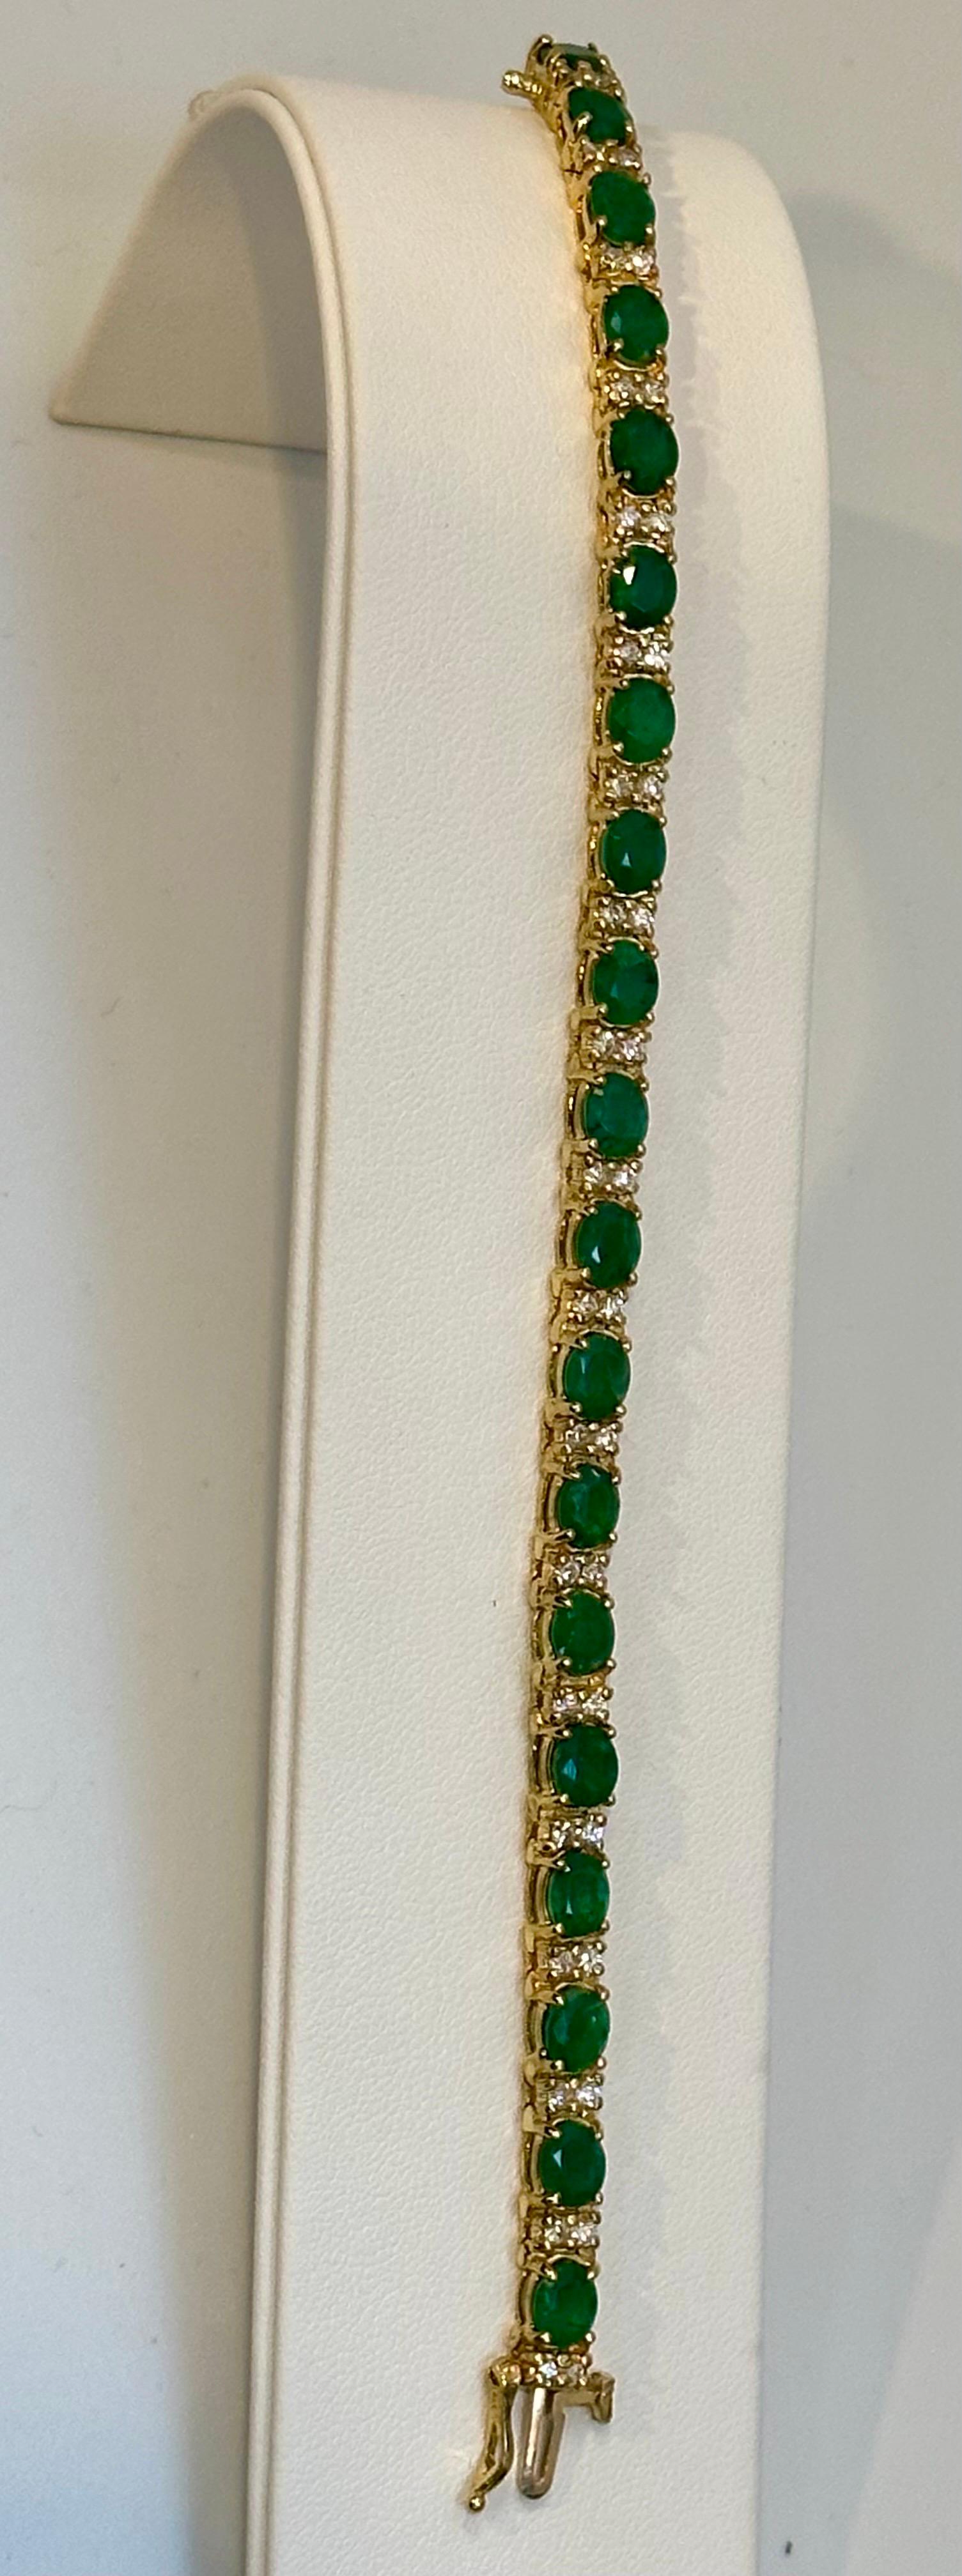 13 Carat Natural Emerald & Diamond Cocktail Tennis Bracelet 14 Karat Yellow Gold 13